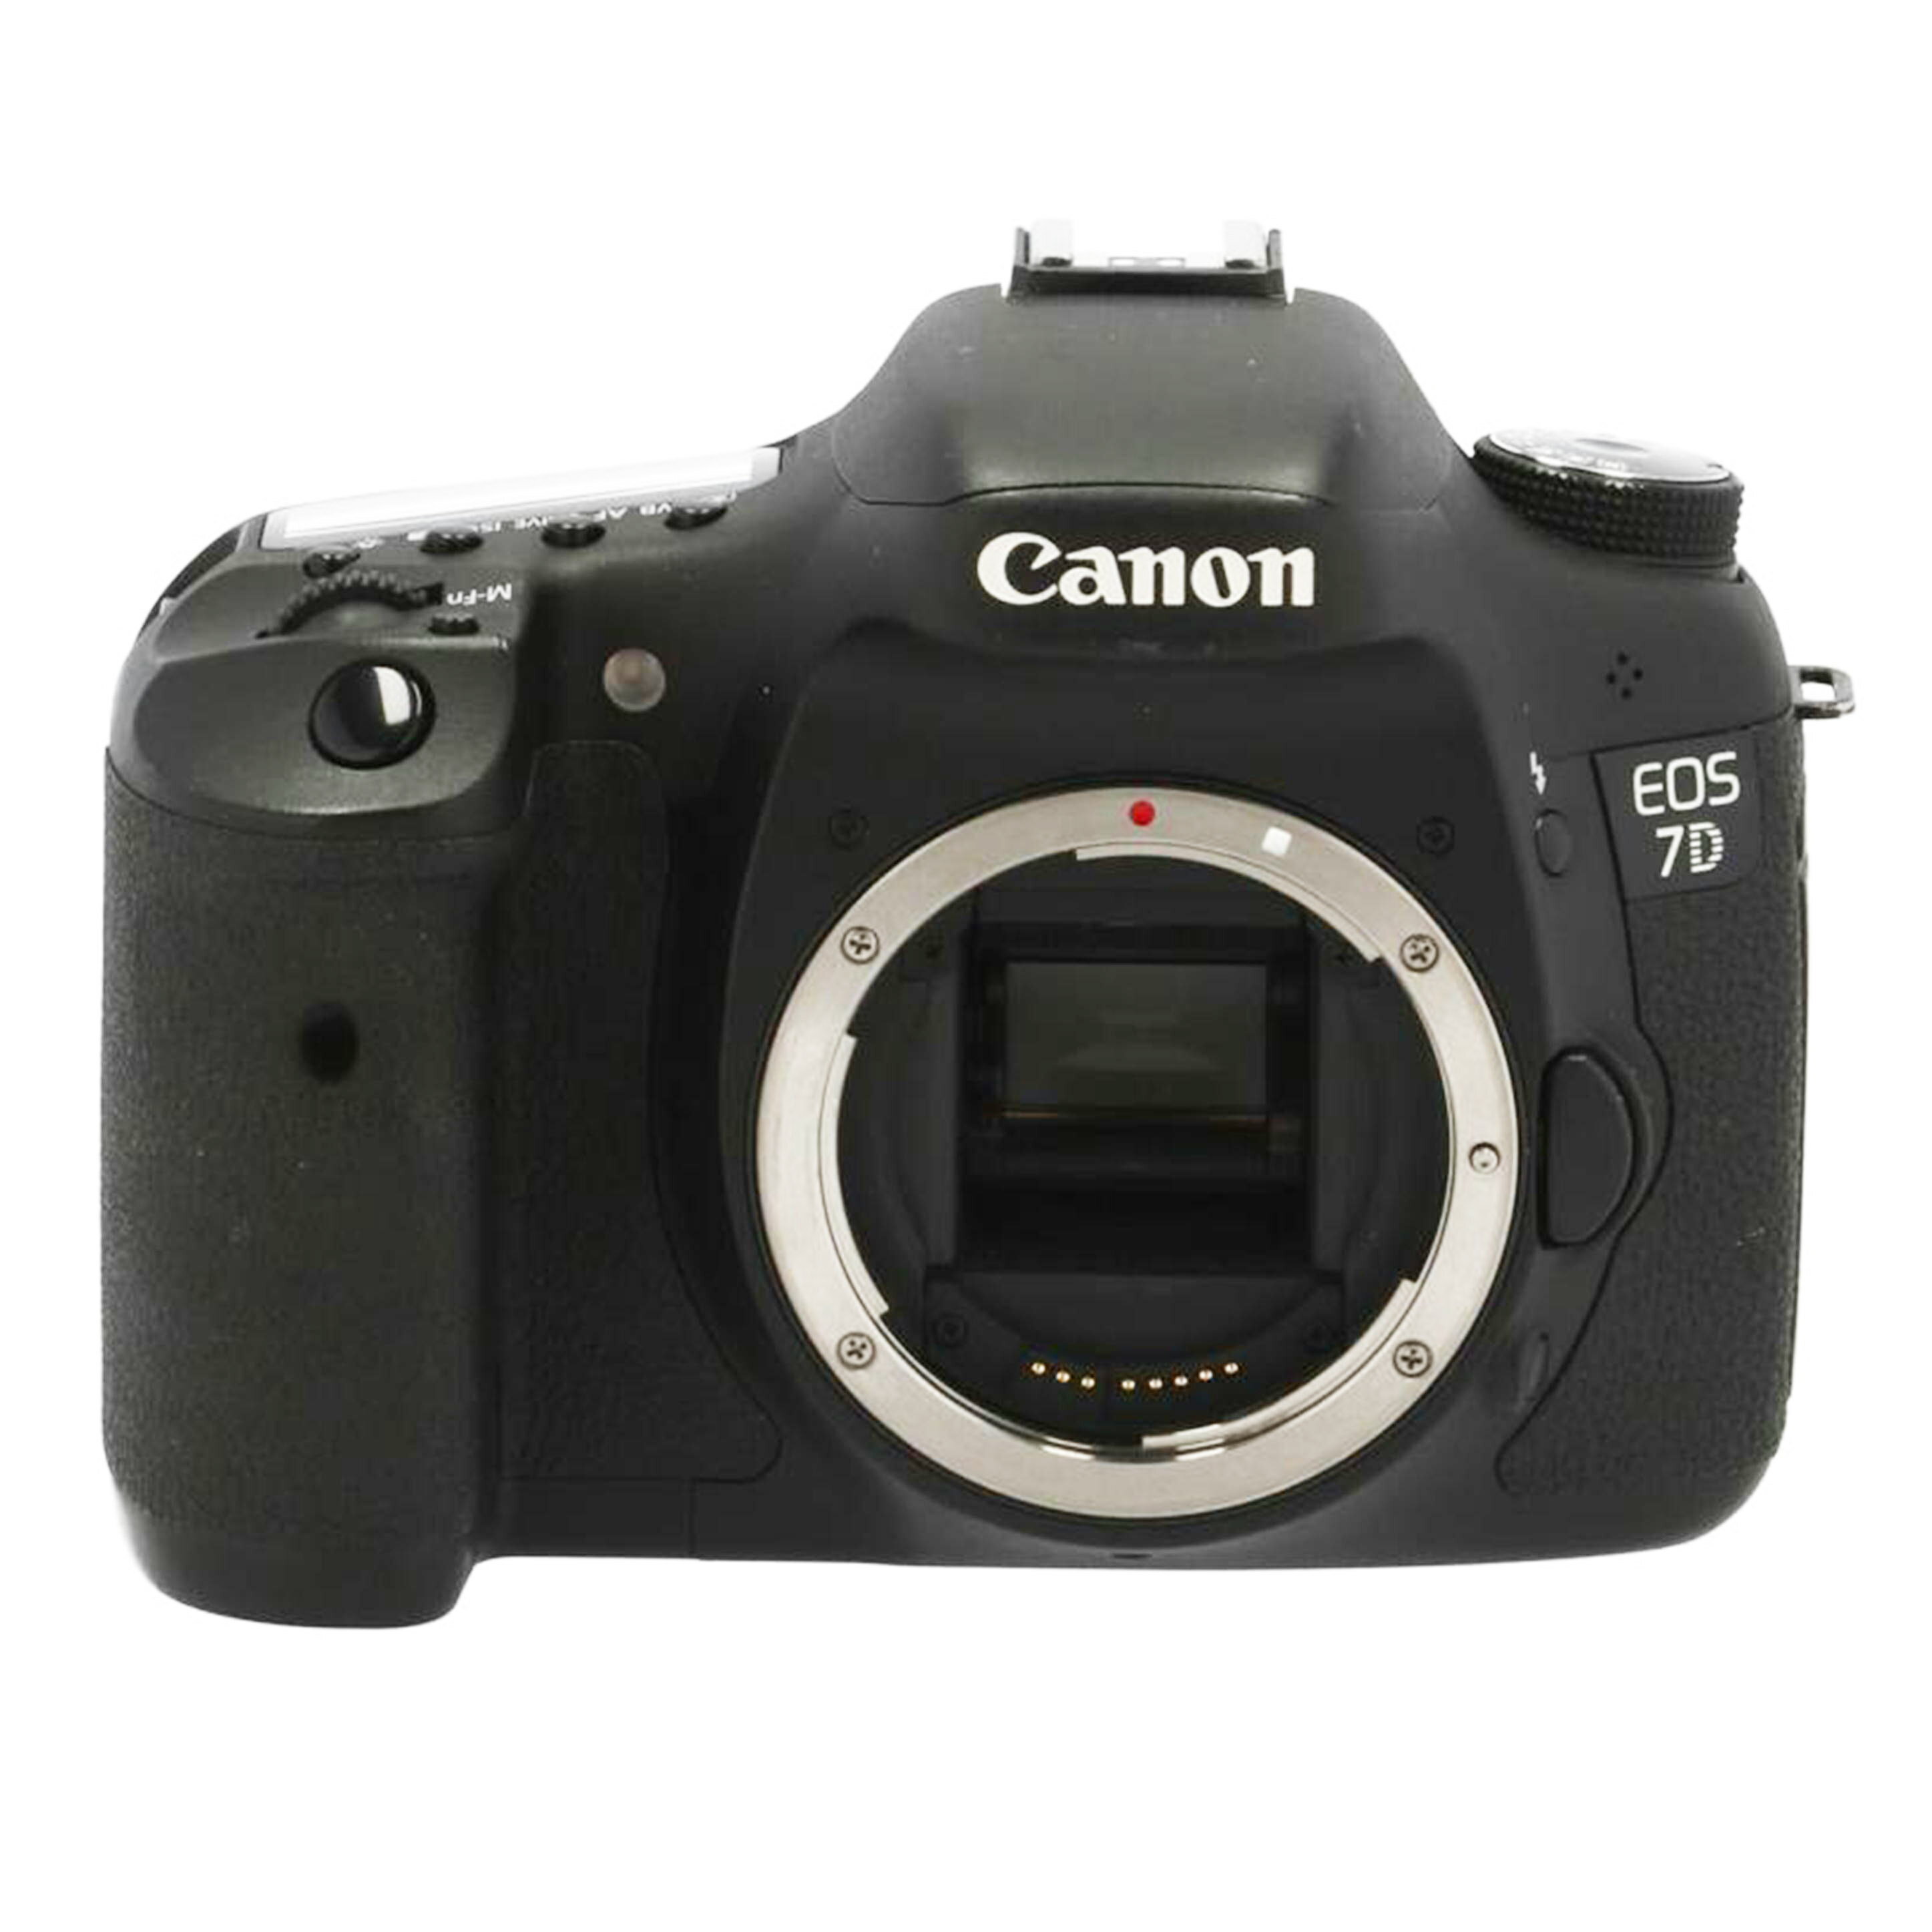 Canon キャノン/デジタル一眼/EOS 7D ボ